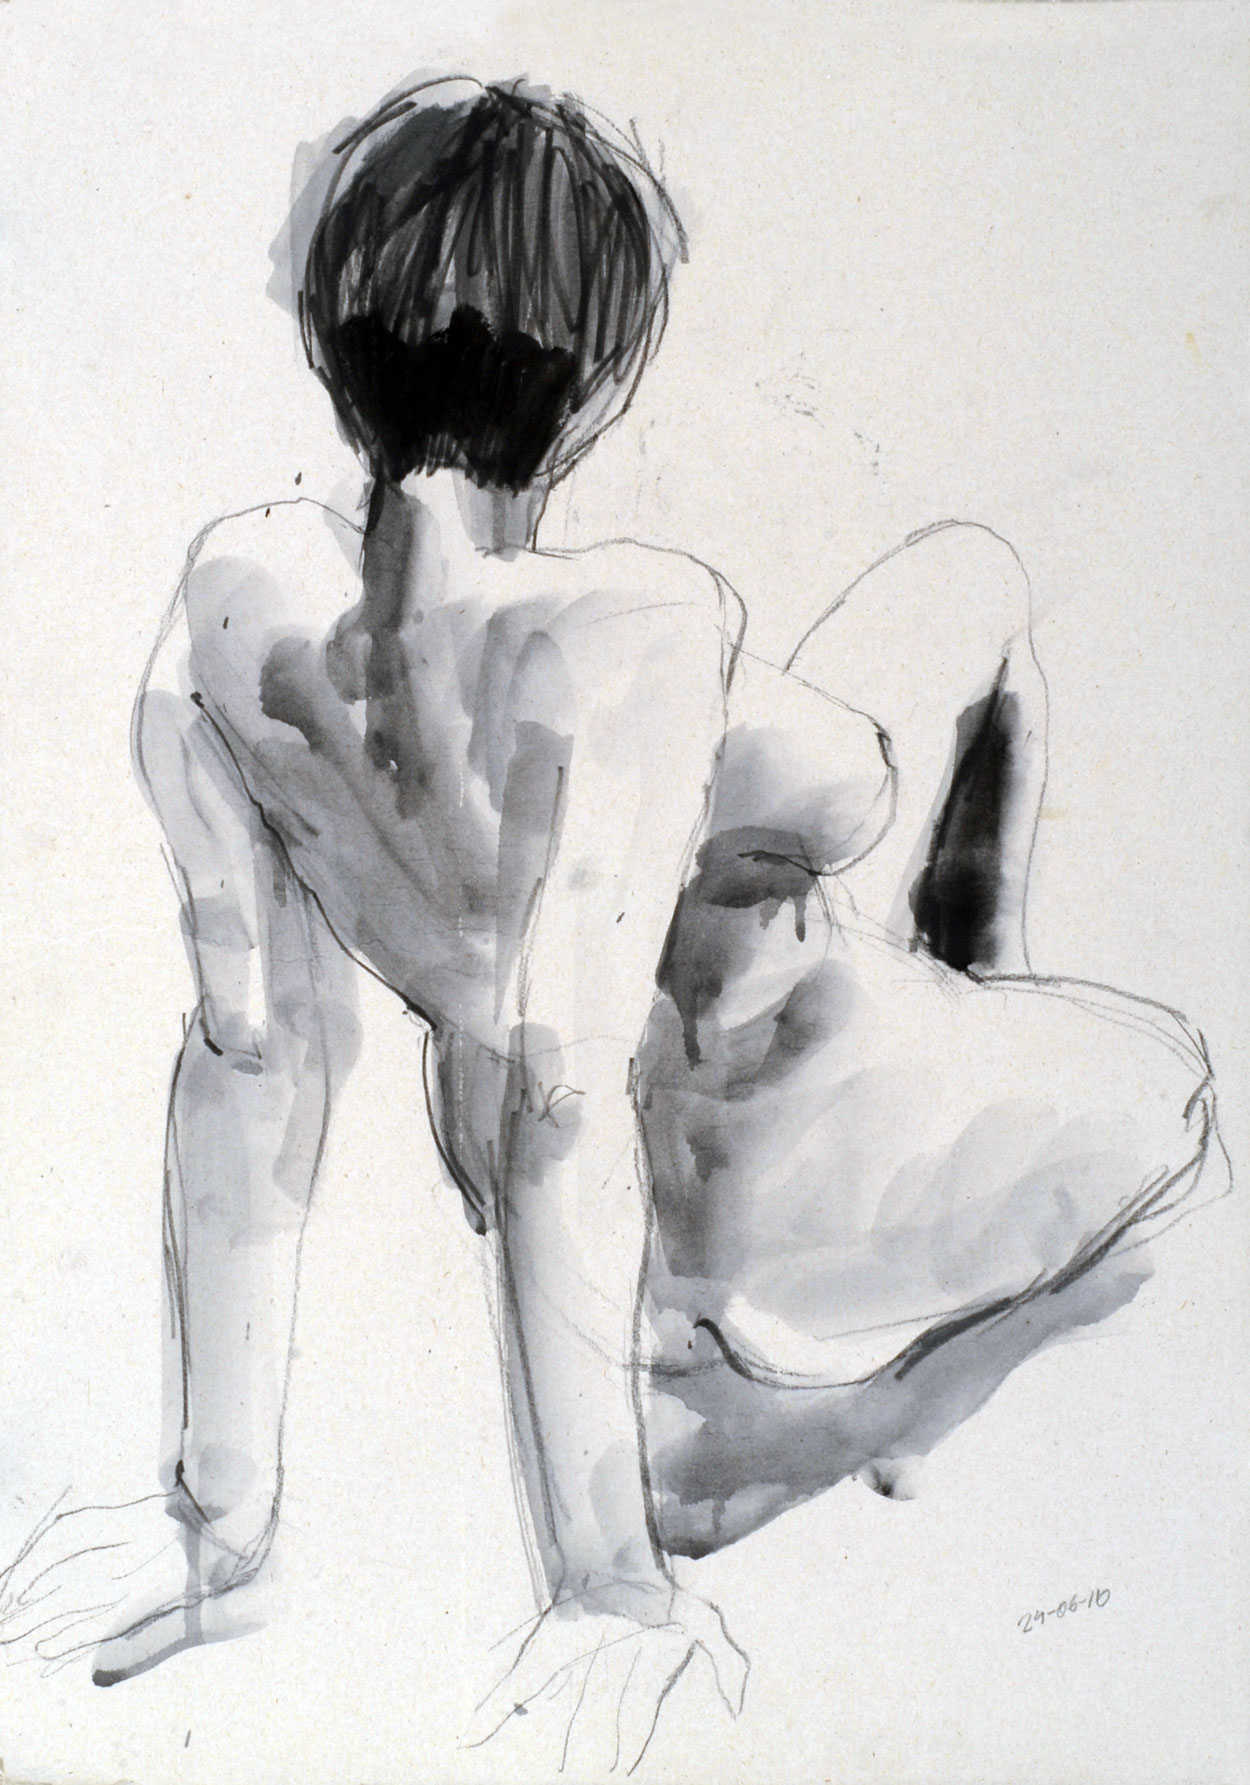 Rückenakt, 2010, Stift/Tusche auf Karton, 58 x 42 cm